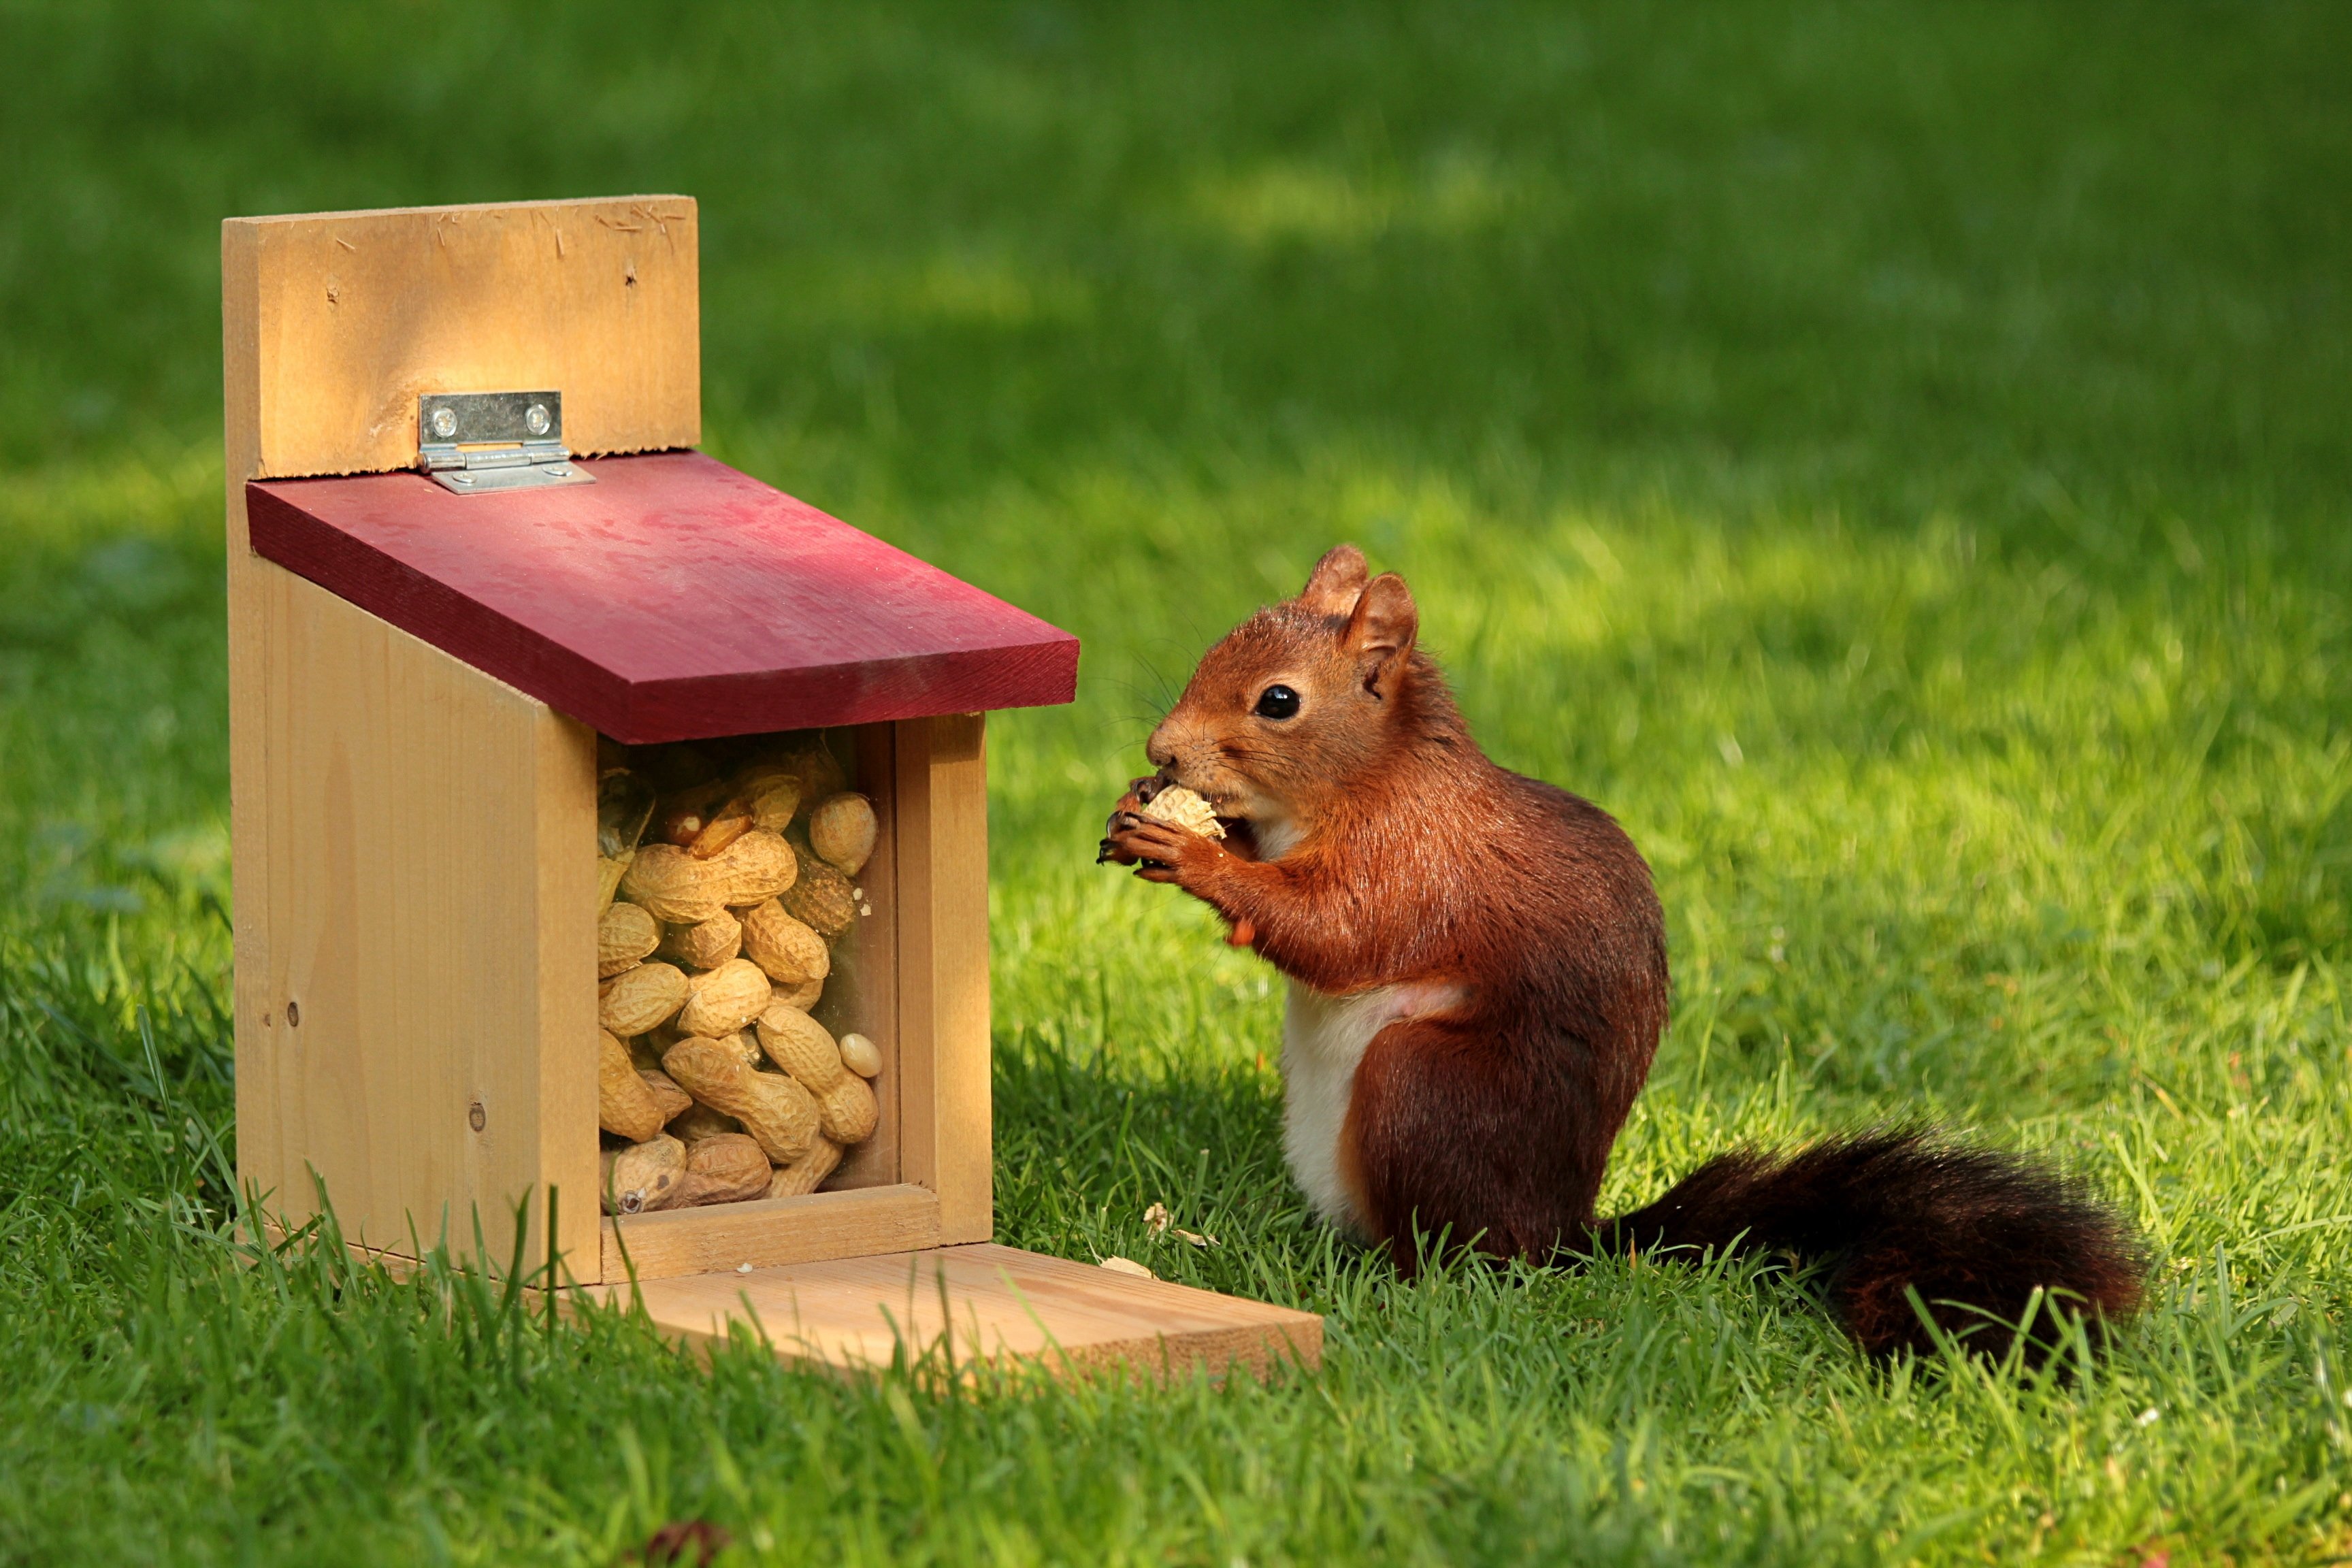 Squirrel Wallpaper - Squirrel Eating Peanuts - HD Wallpaper 